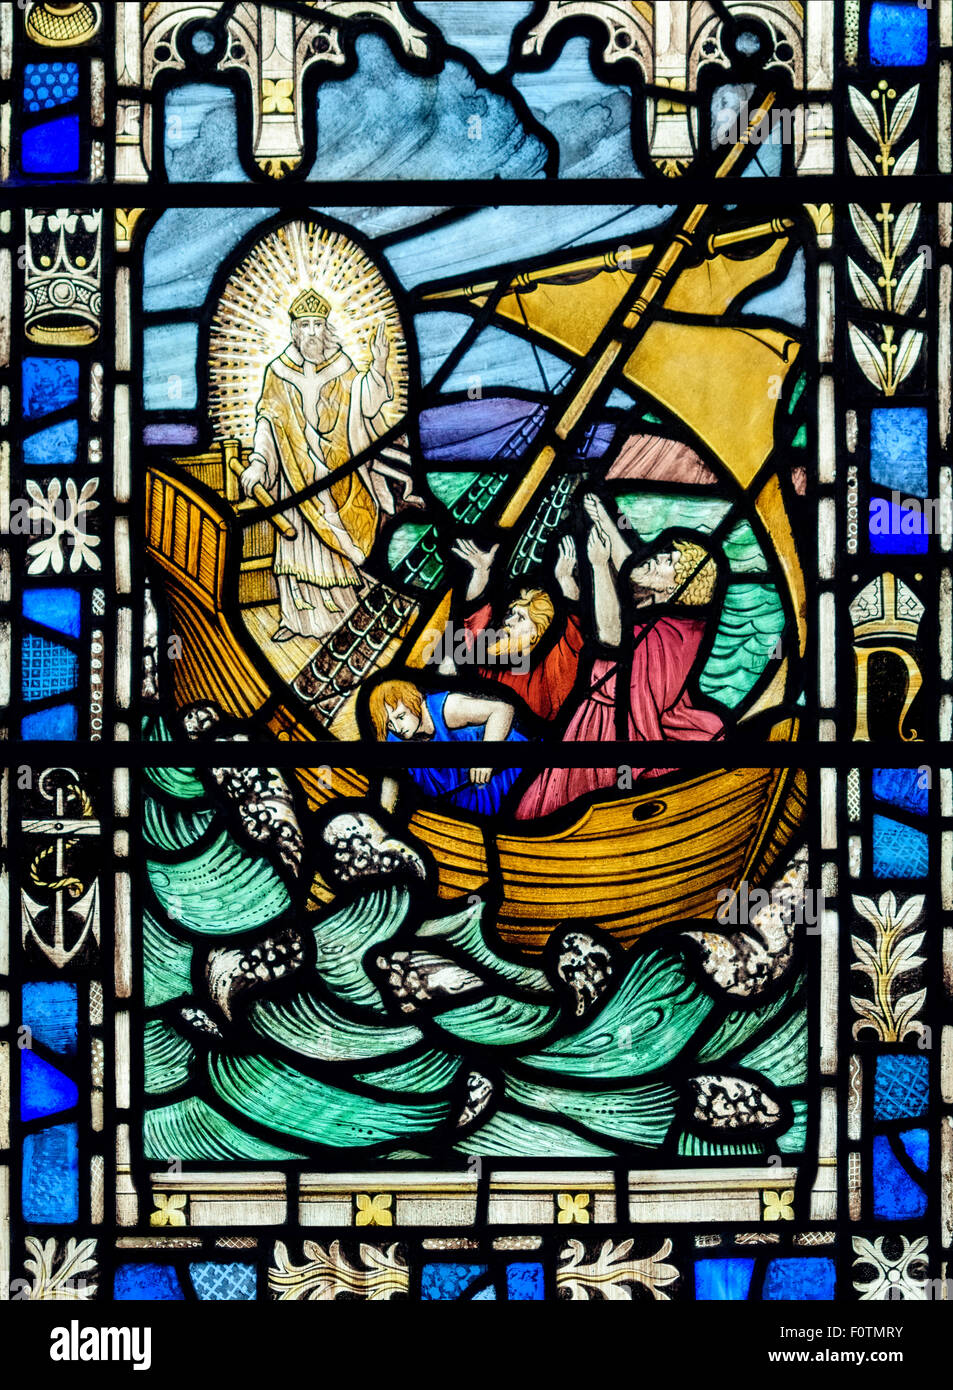 Glasmalerei-Fenster Darstellung von Jesus, die Beruhigung des Sturms, St.-Andreas Kirche, Dent, Yorkshire Dales National Park, Cumbria, UK Stockfoto